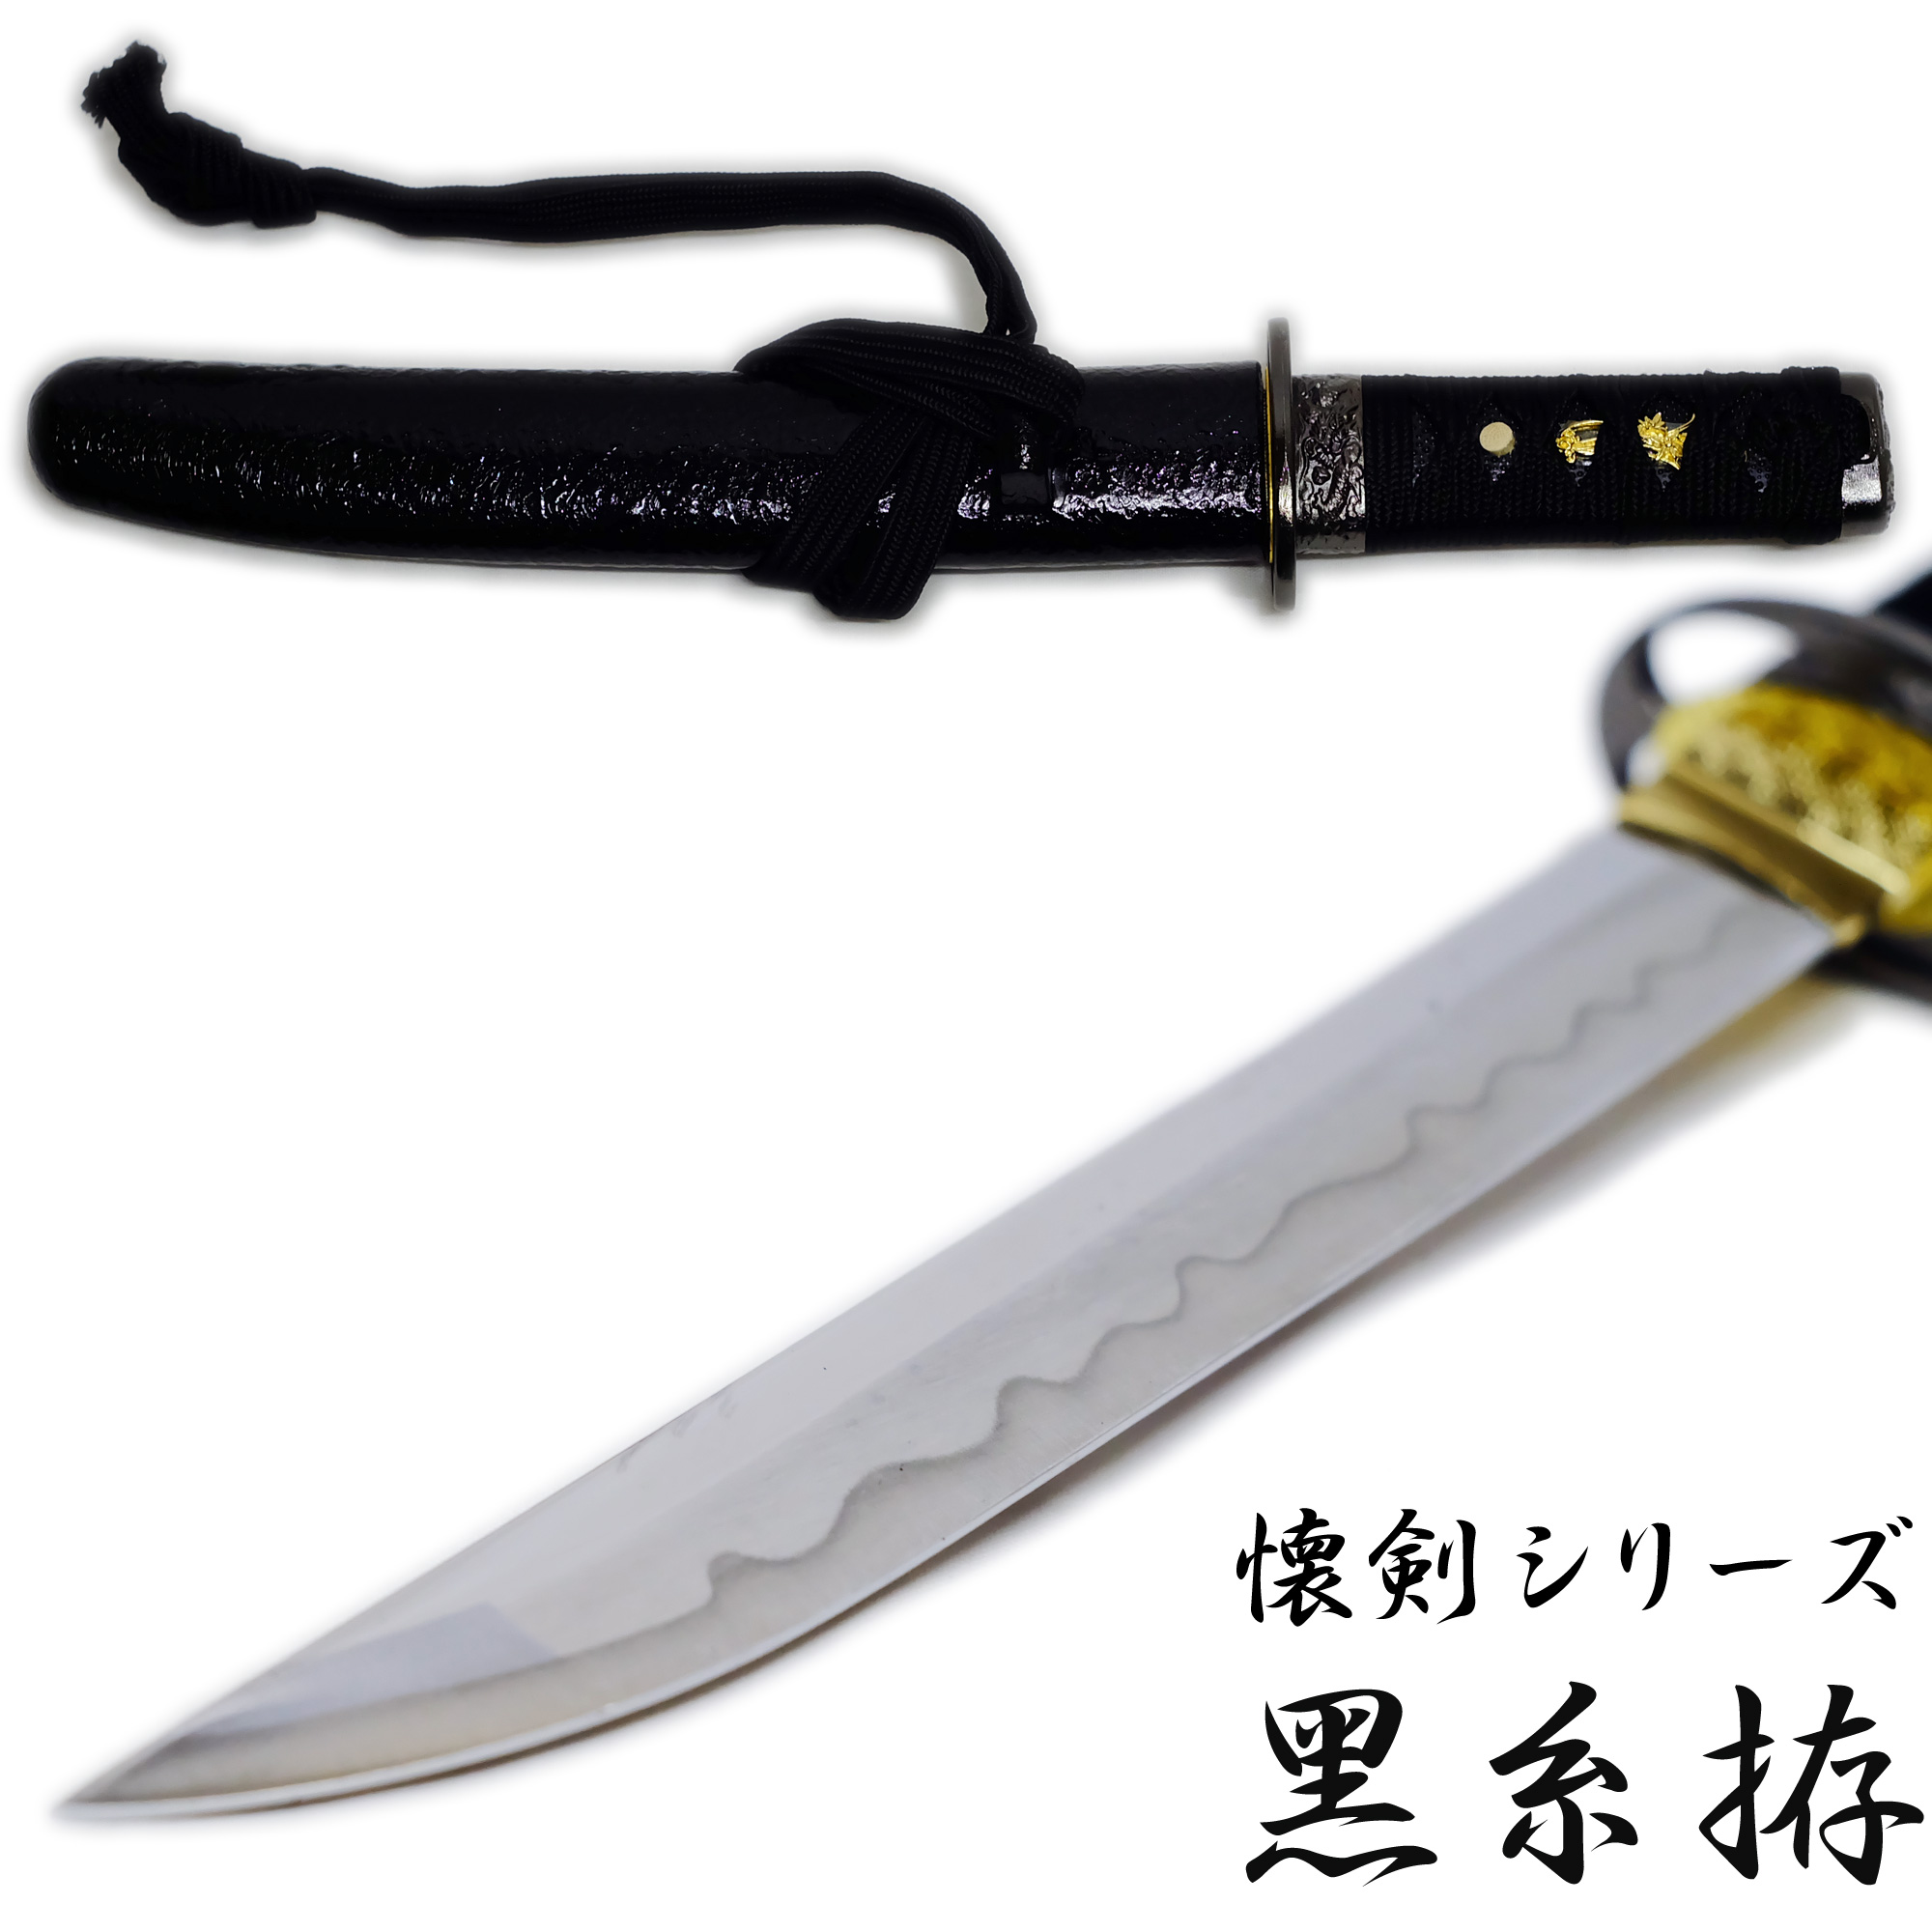 匠刀房 懐剣 黒糸拵 NEU-101BK – 懐剣シリーズ 模造刀 | 日光 匠家